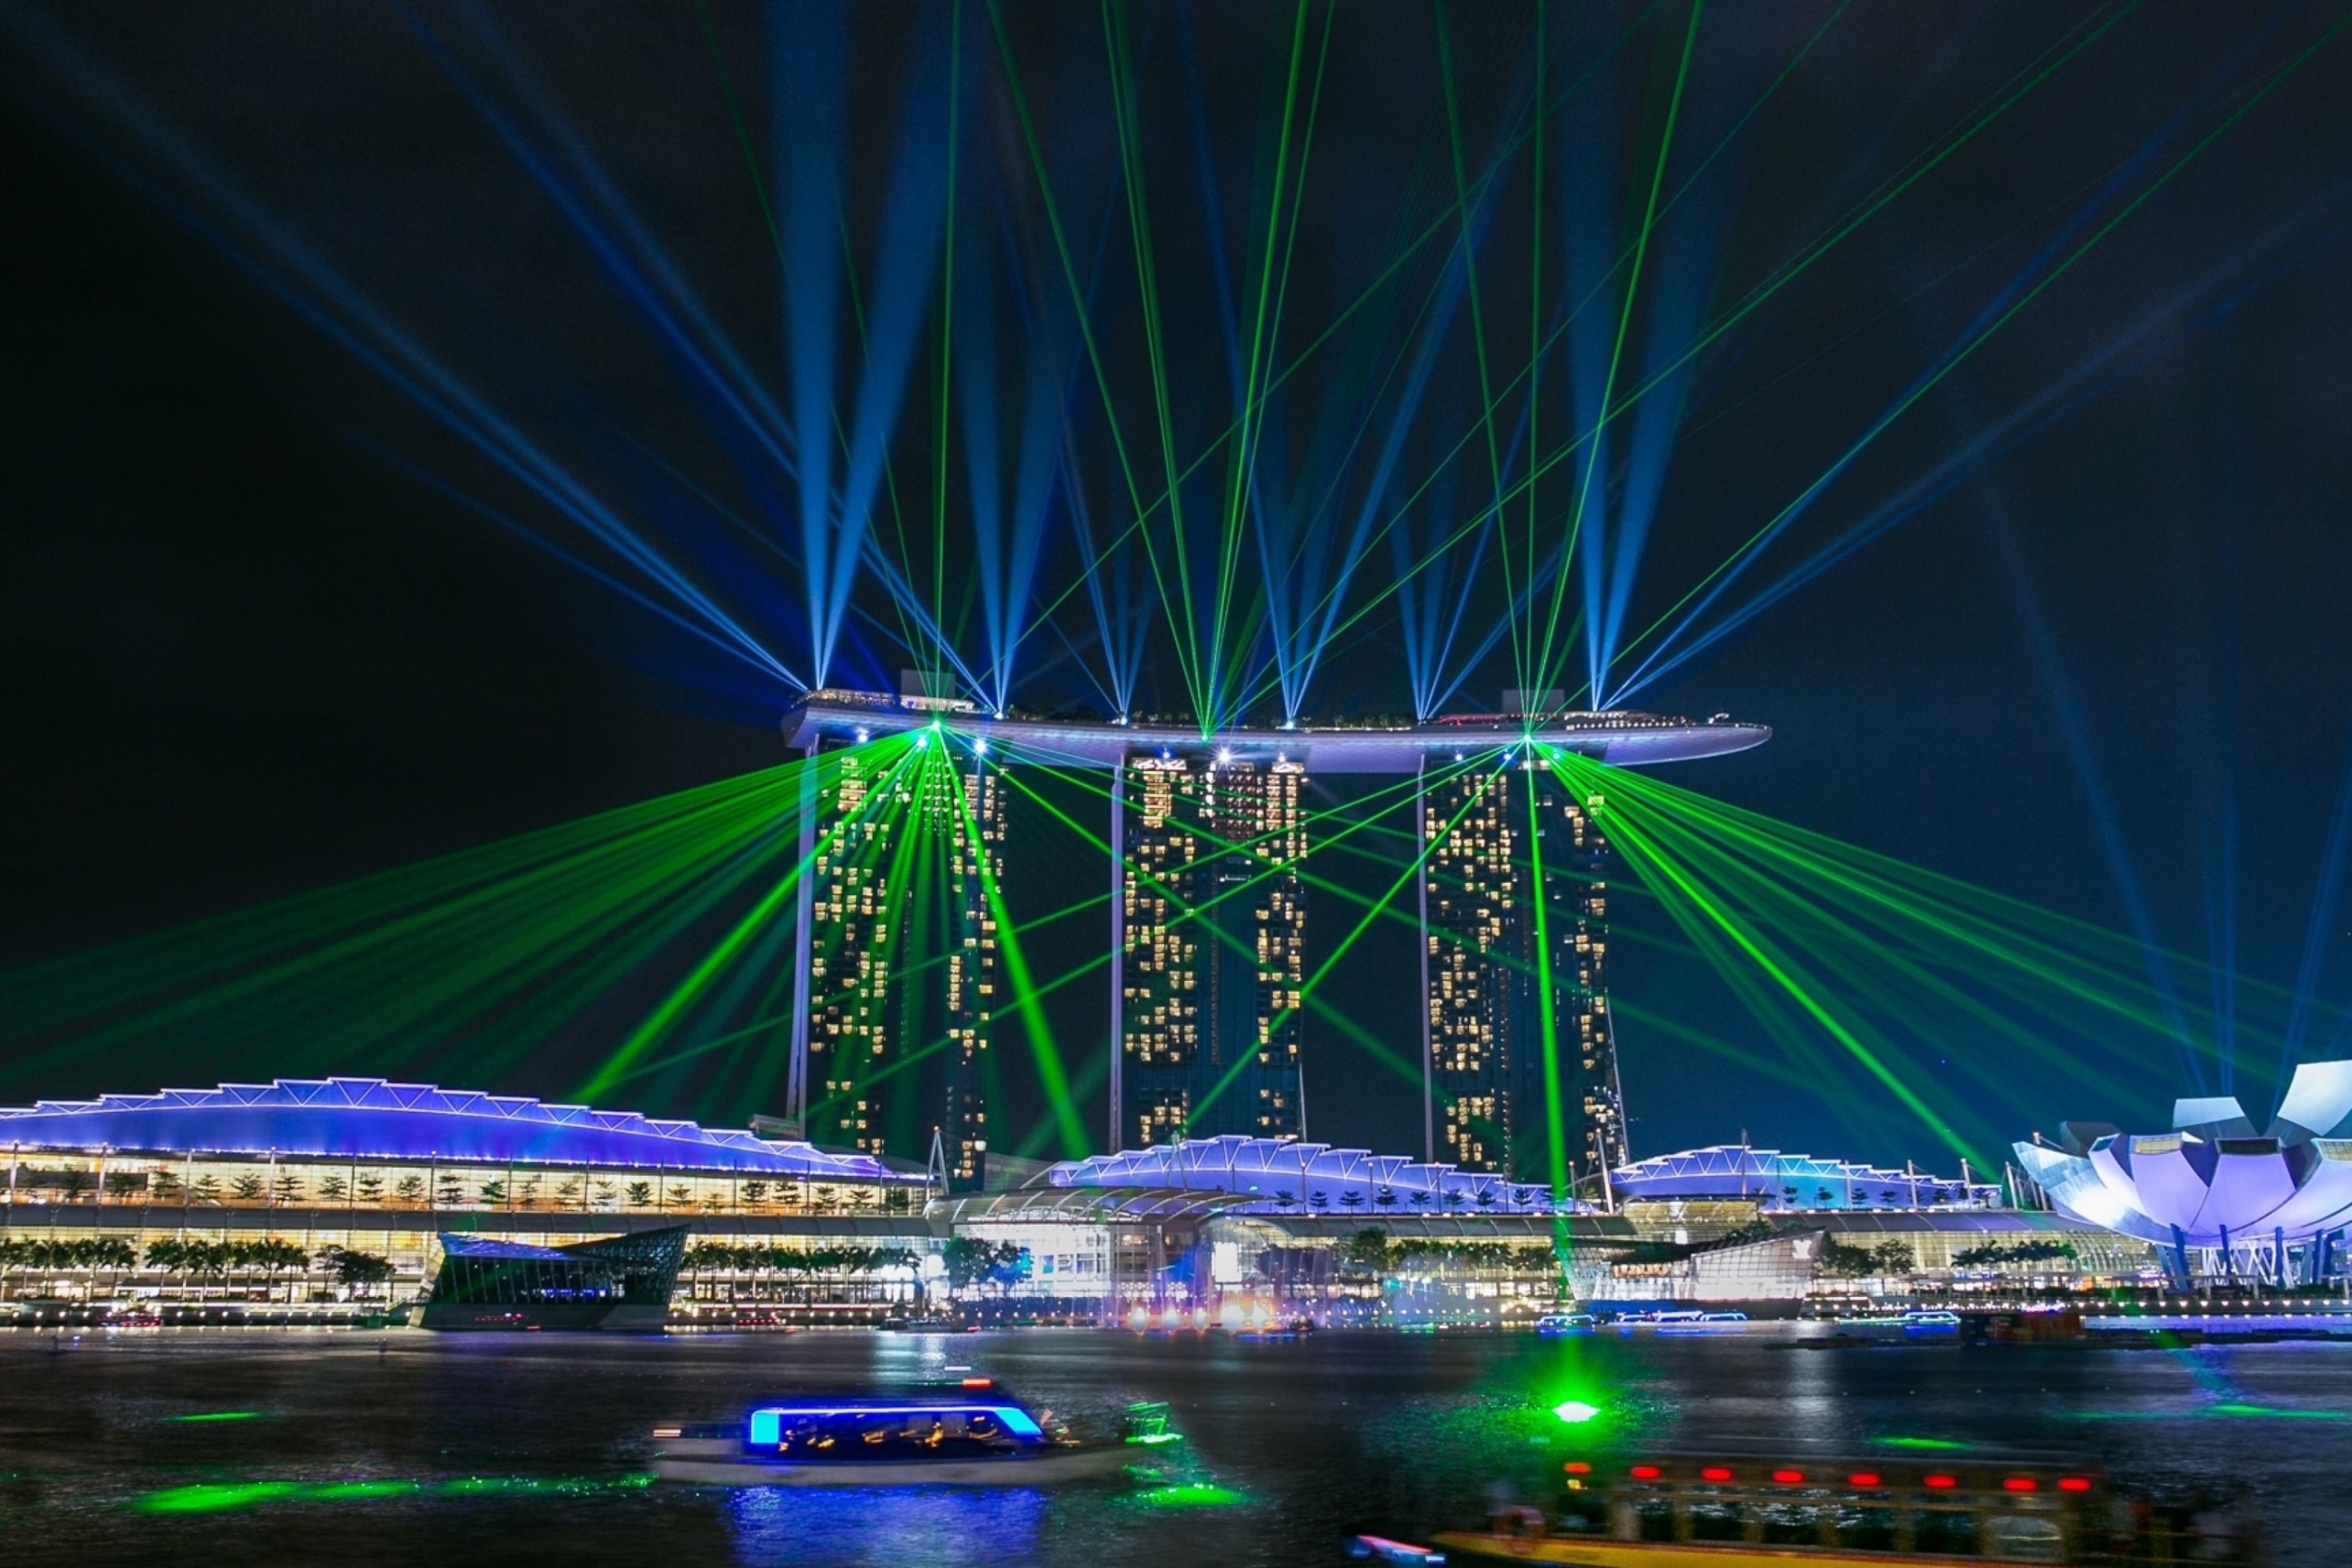 Laser show near Marina Bay Sands Hotel in Singapore screenshot #1 2880x1920